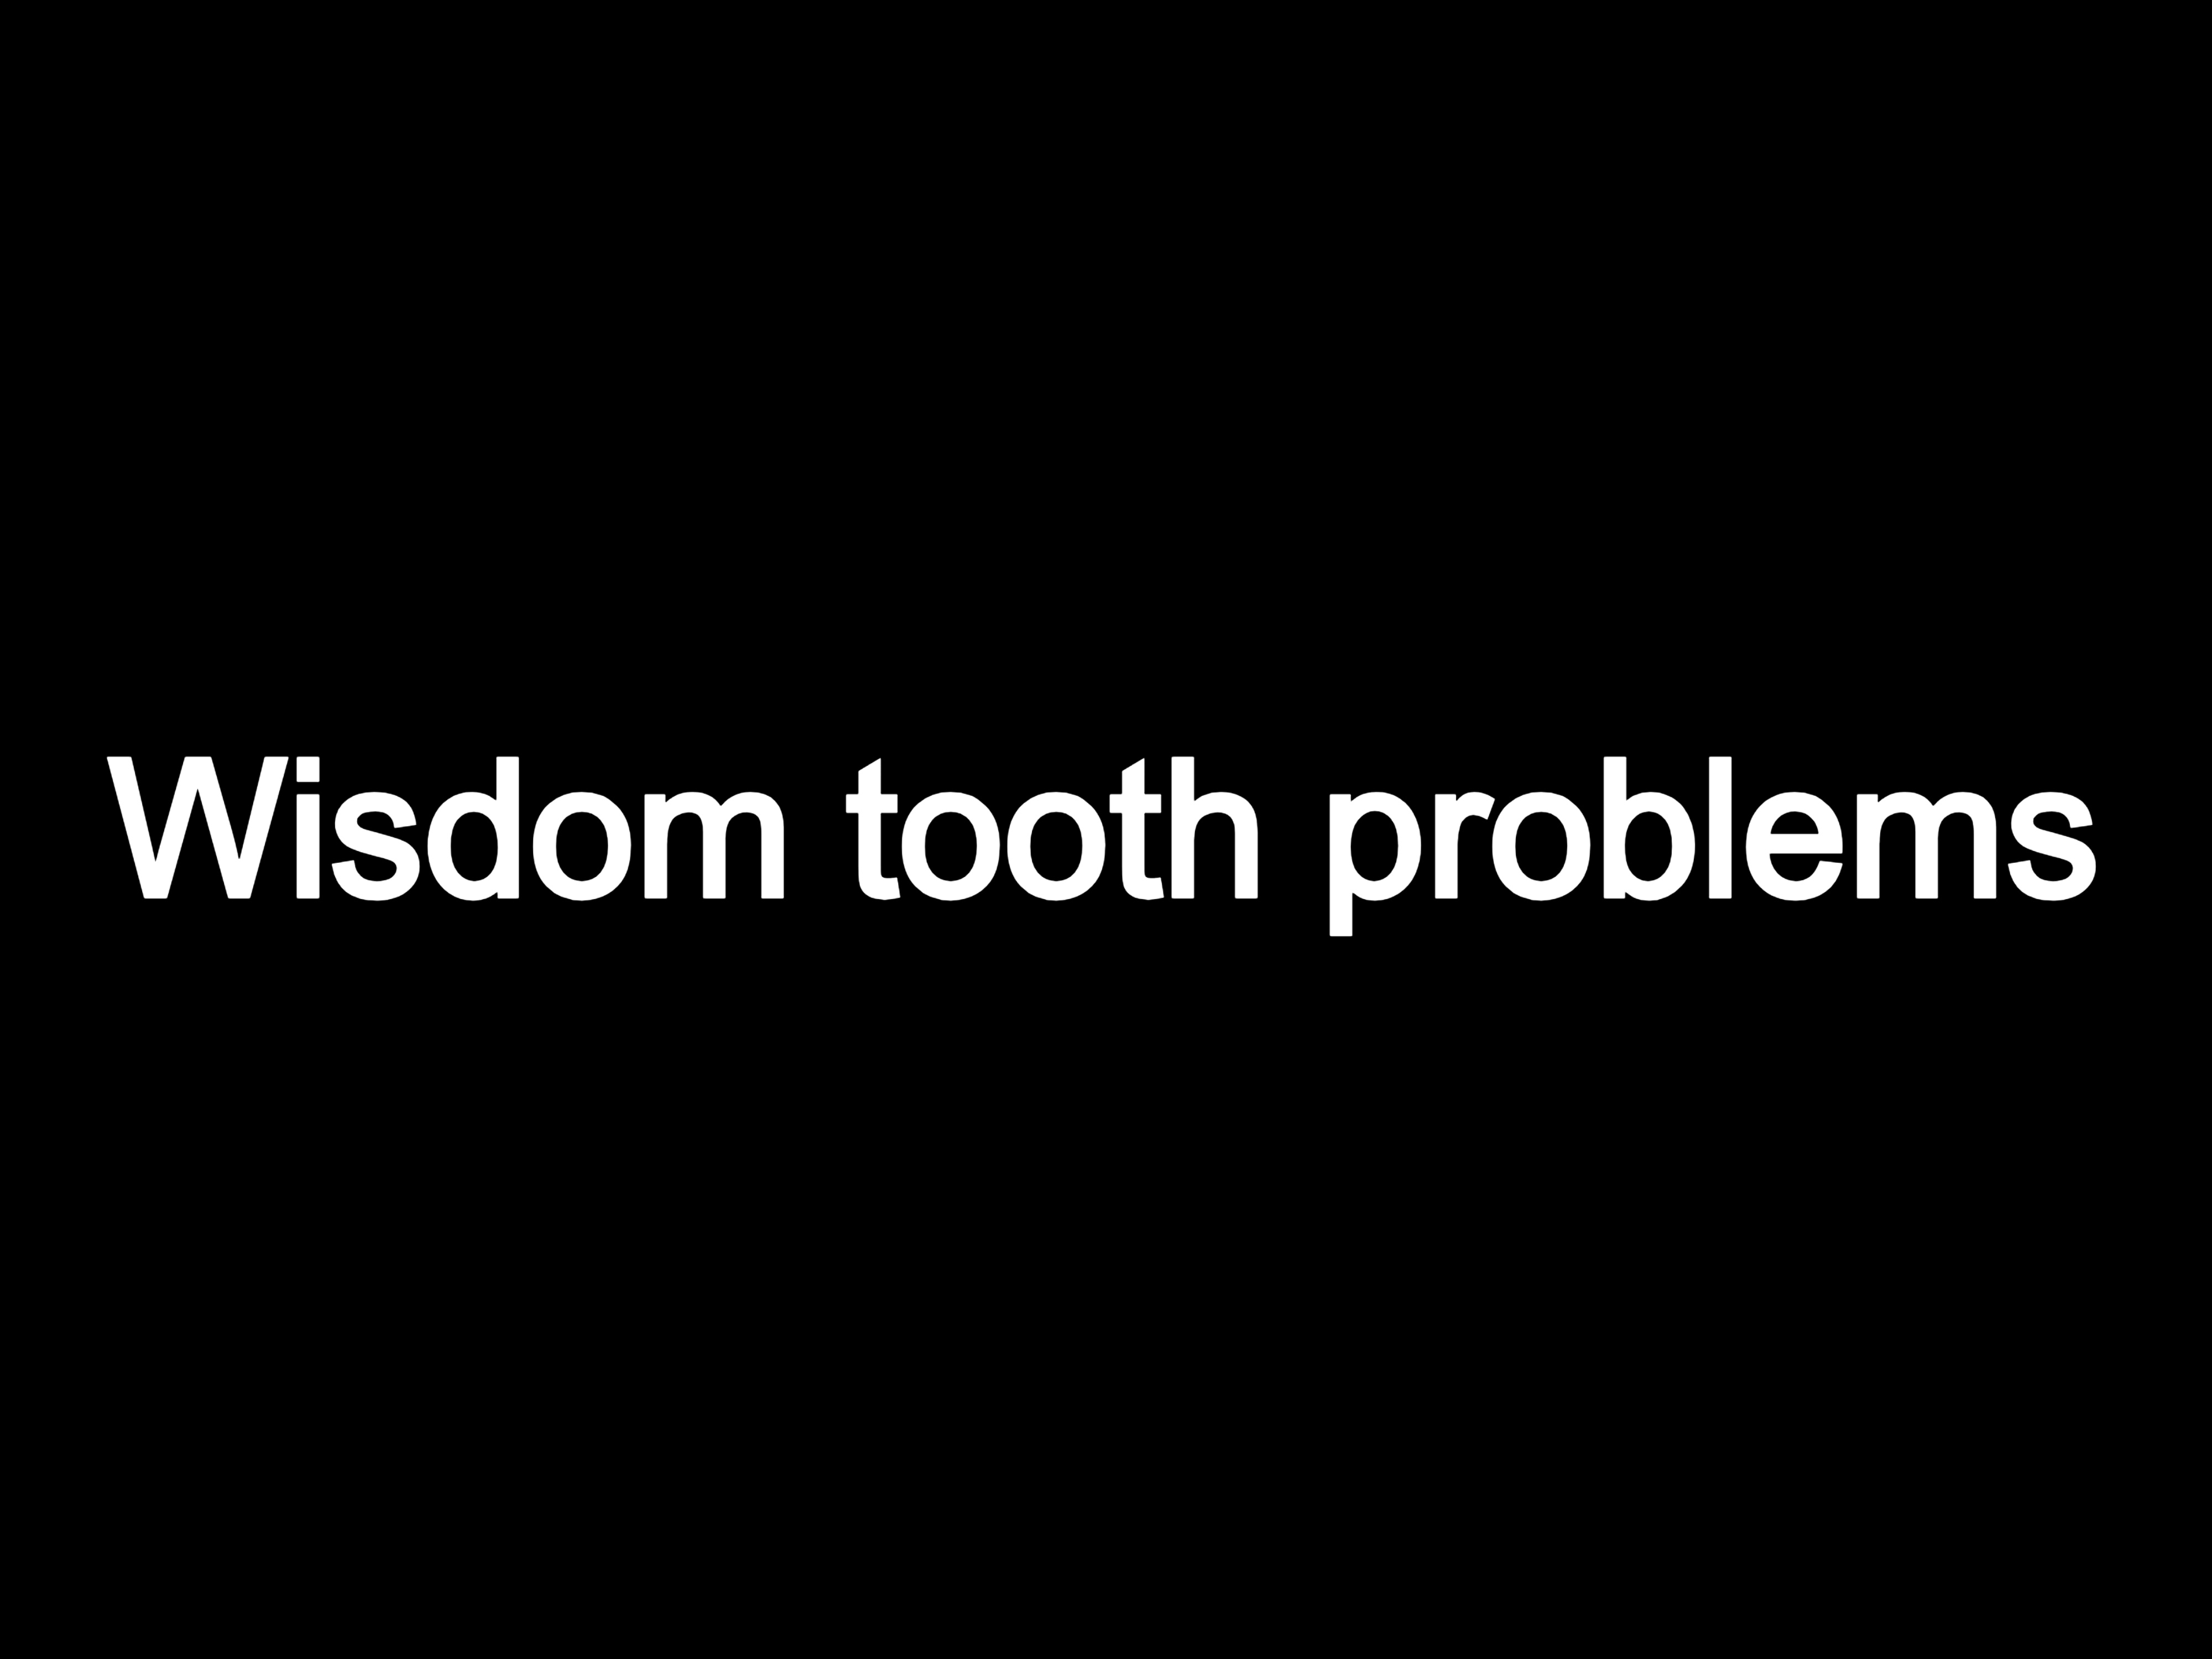 Wisdom tooth problems